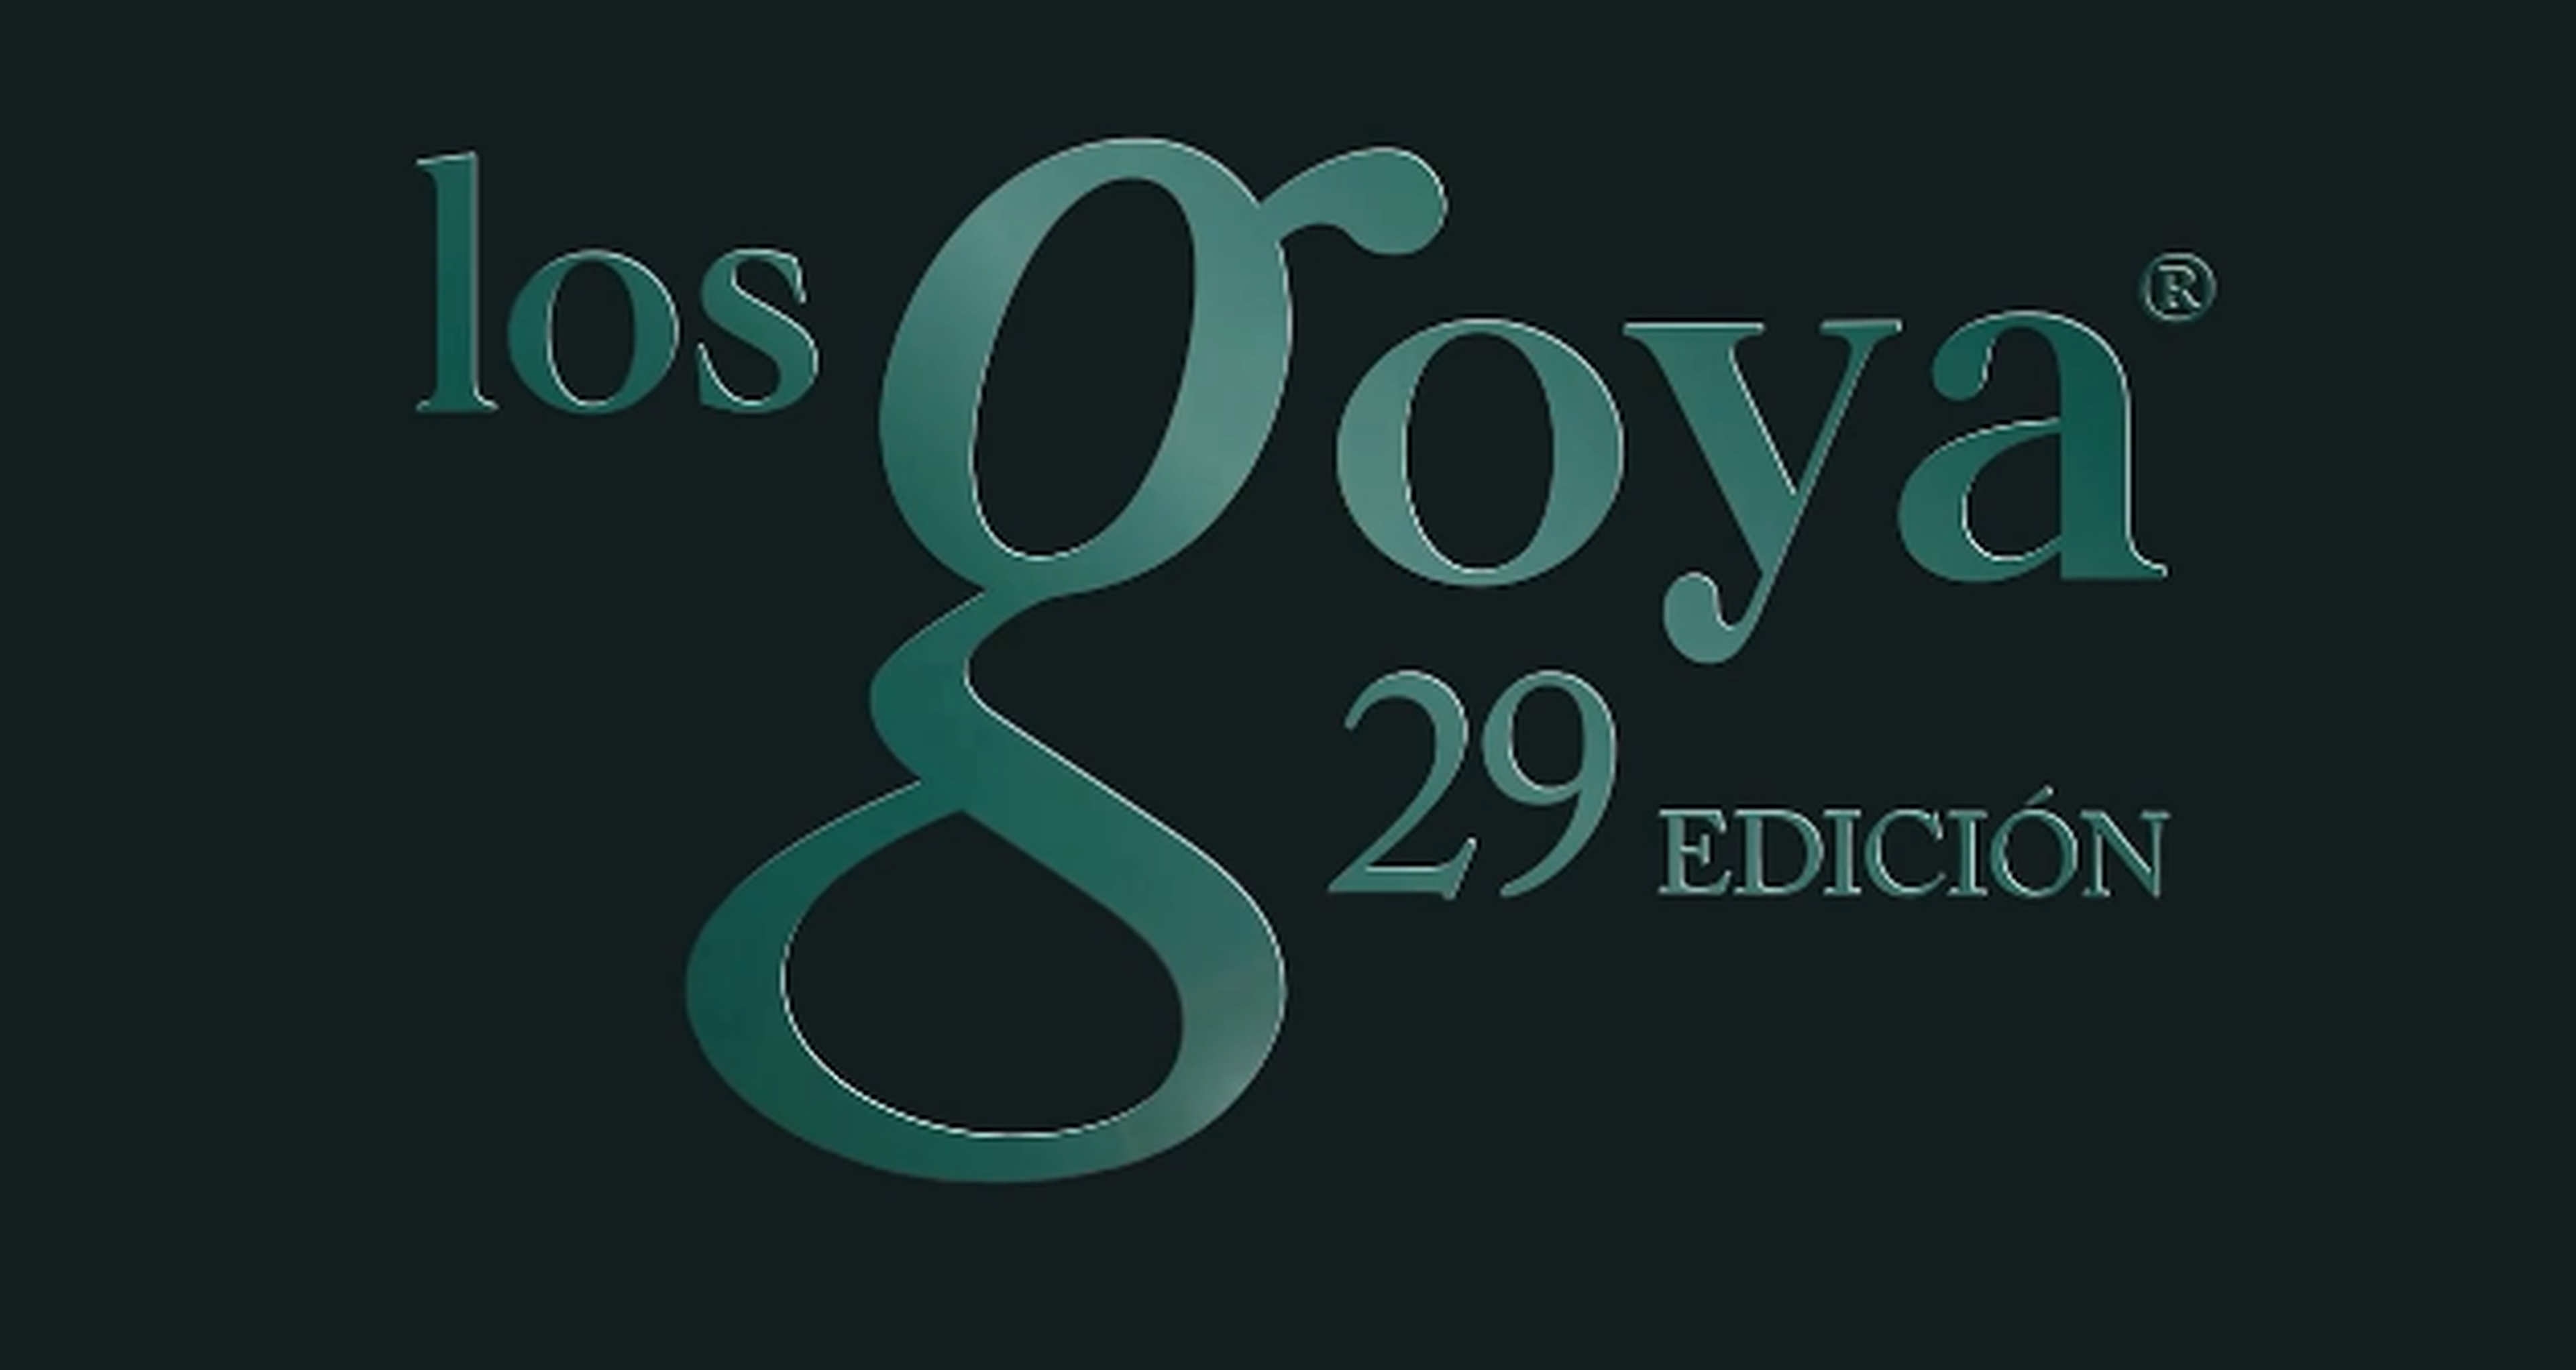 Resultado de encuesta: En los Goya 2015 ha ganado vuestra película favorita